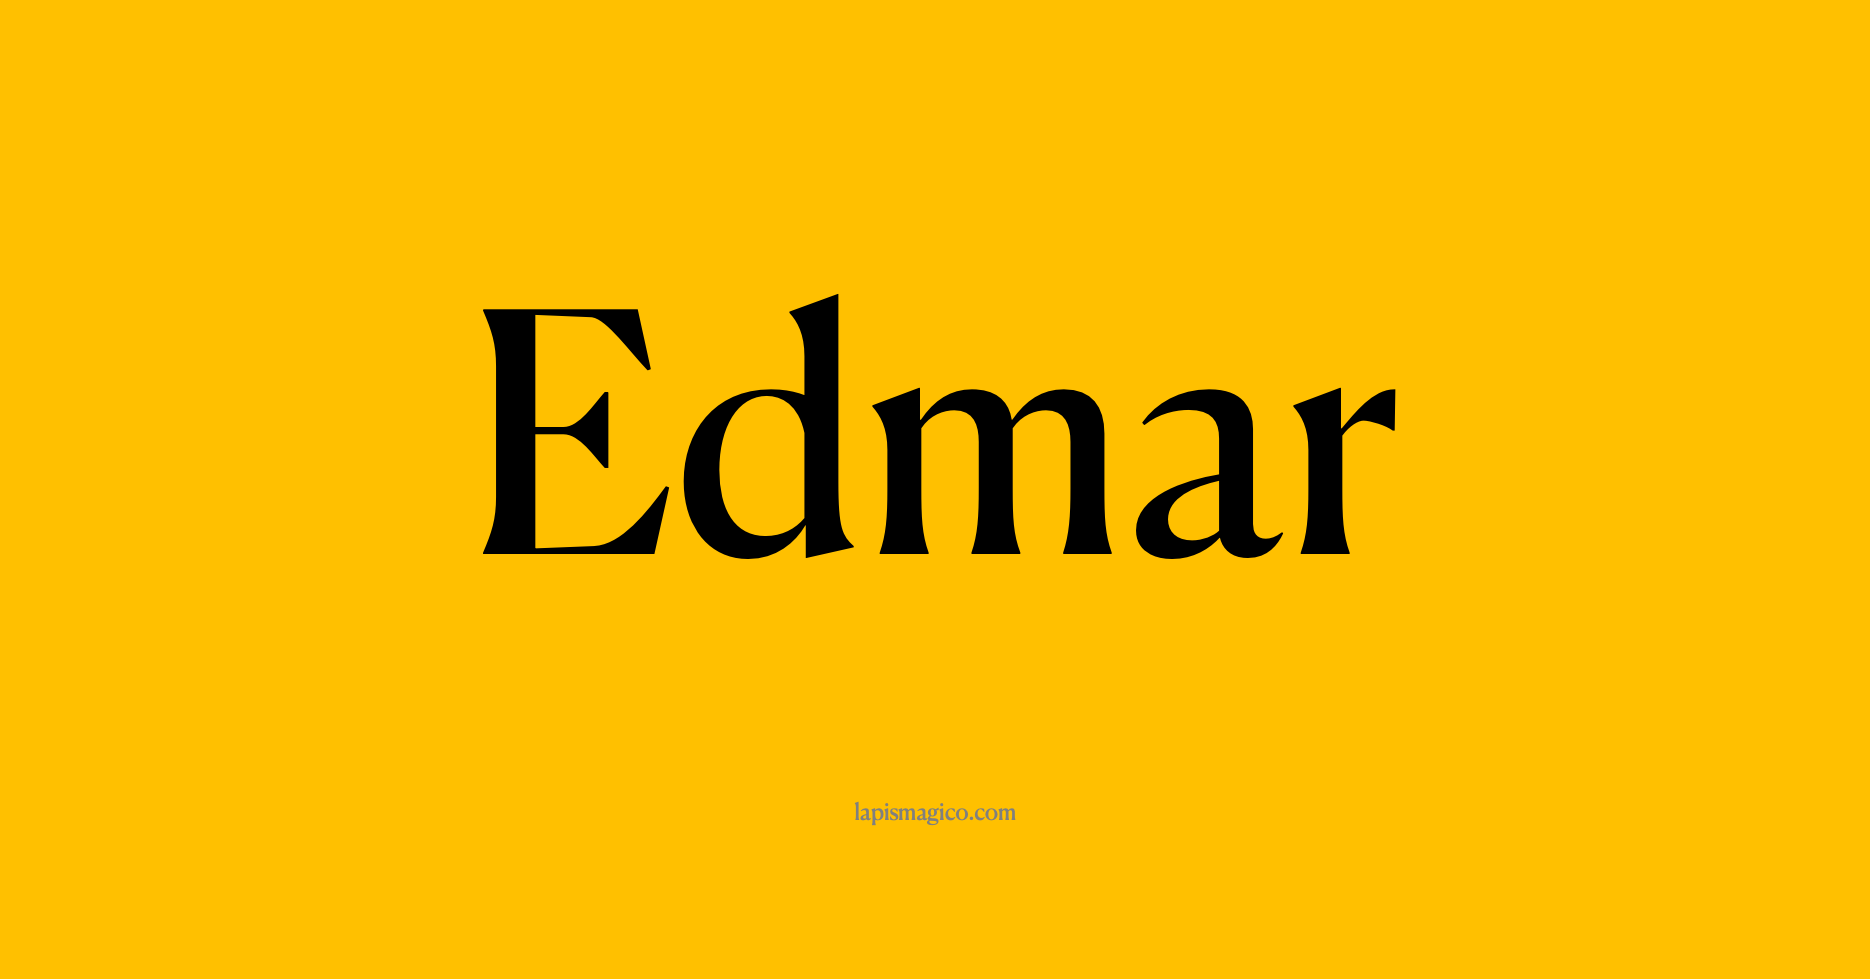 Nome Edmar